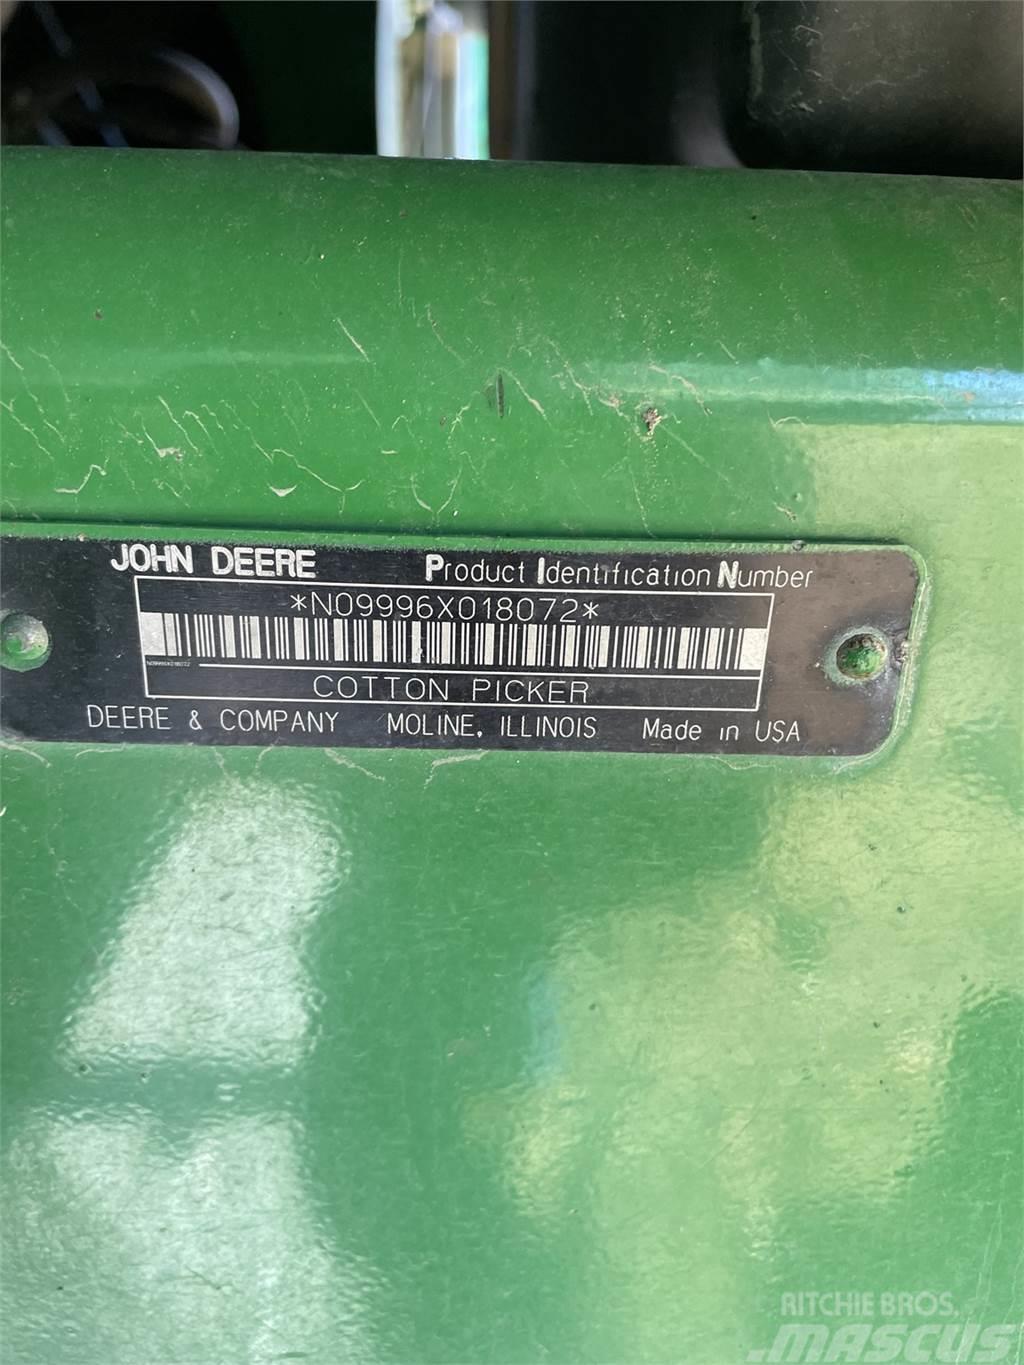 John Deere 9996 Інше збиральне обладнання